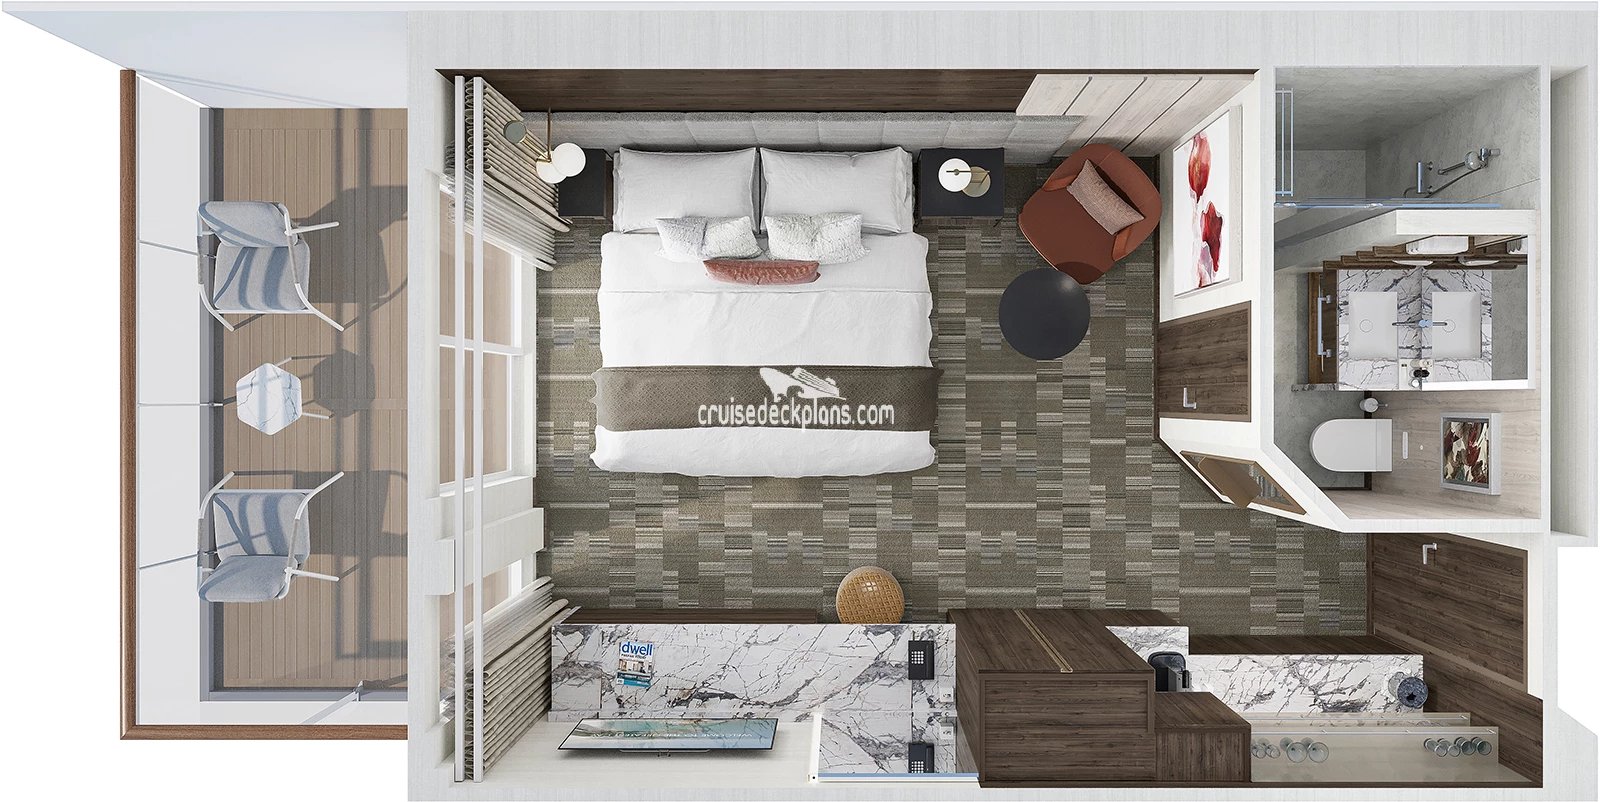 Norwegian Epic Courtyard Penthouse cabin floor plan